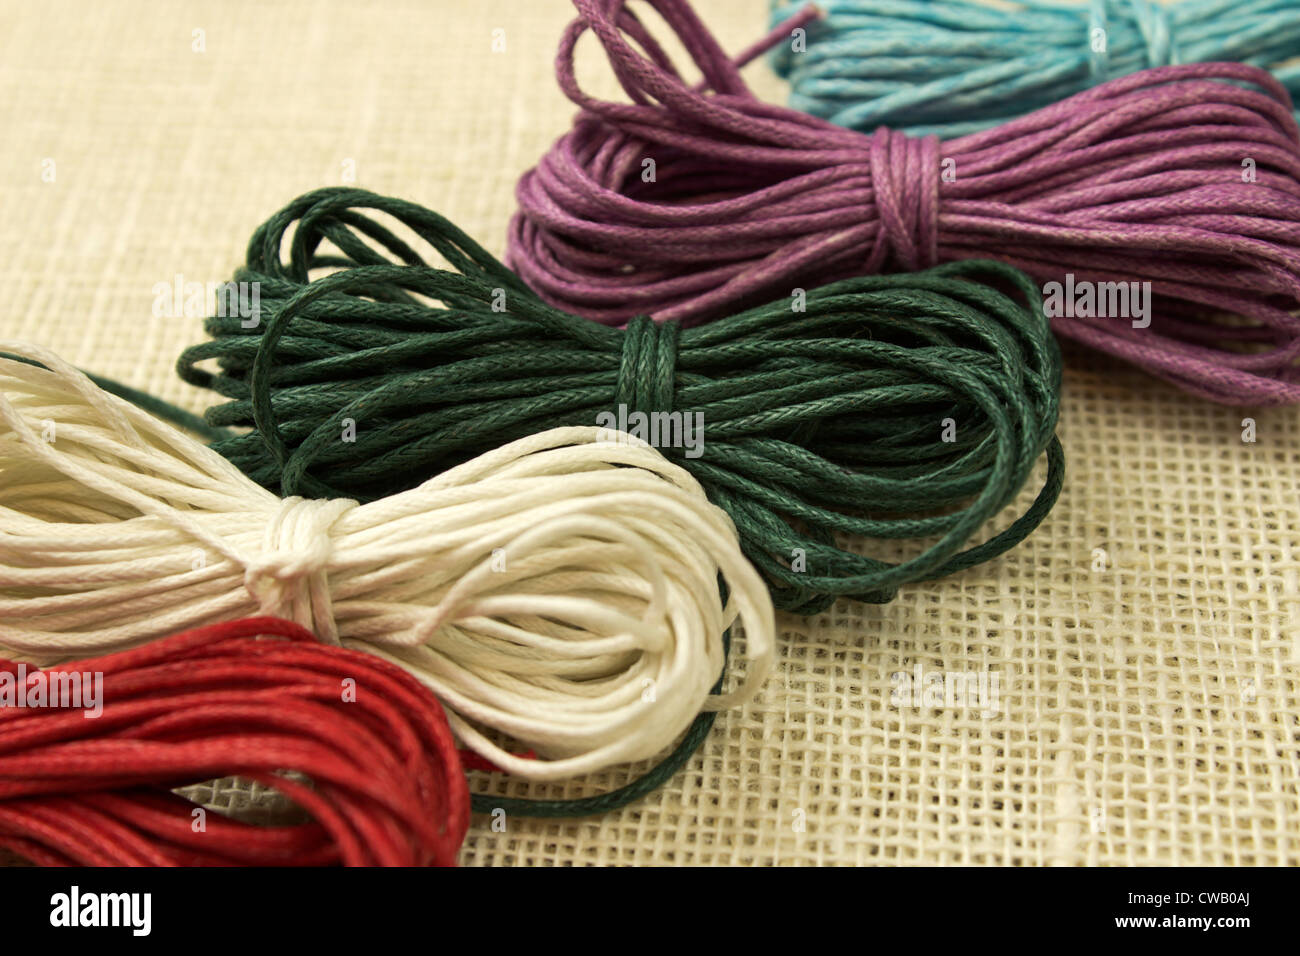 Belle image conceptuelle avec l'ensemble de cordes colorées Banque D'Images